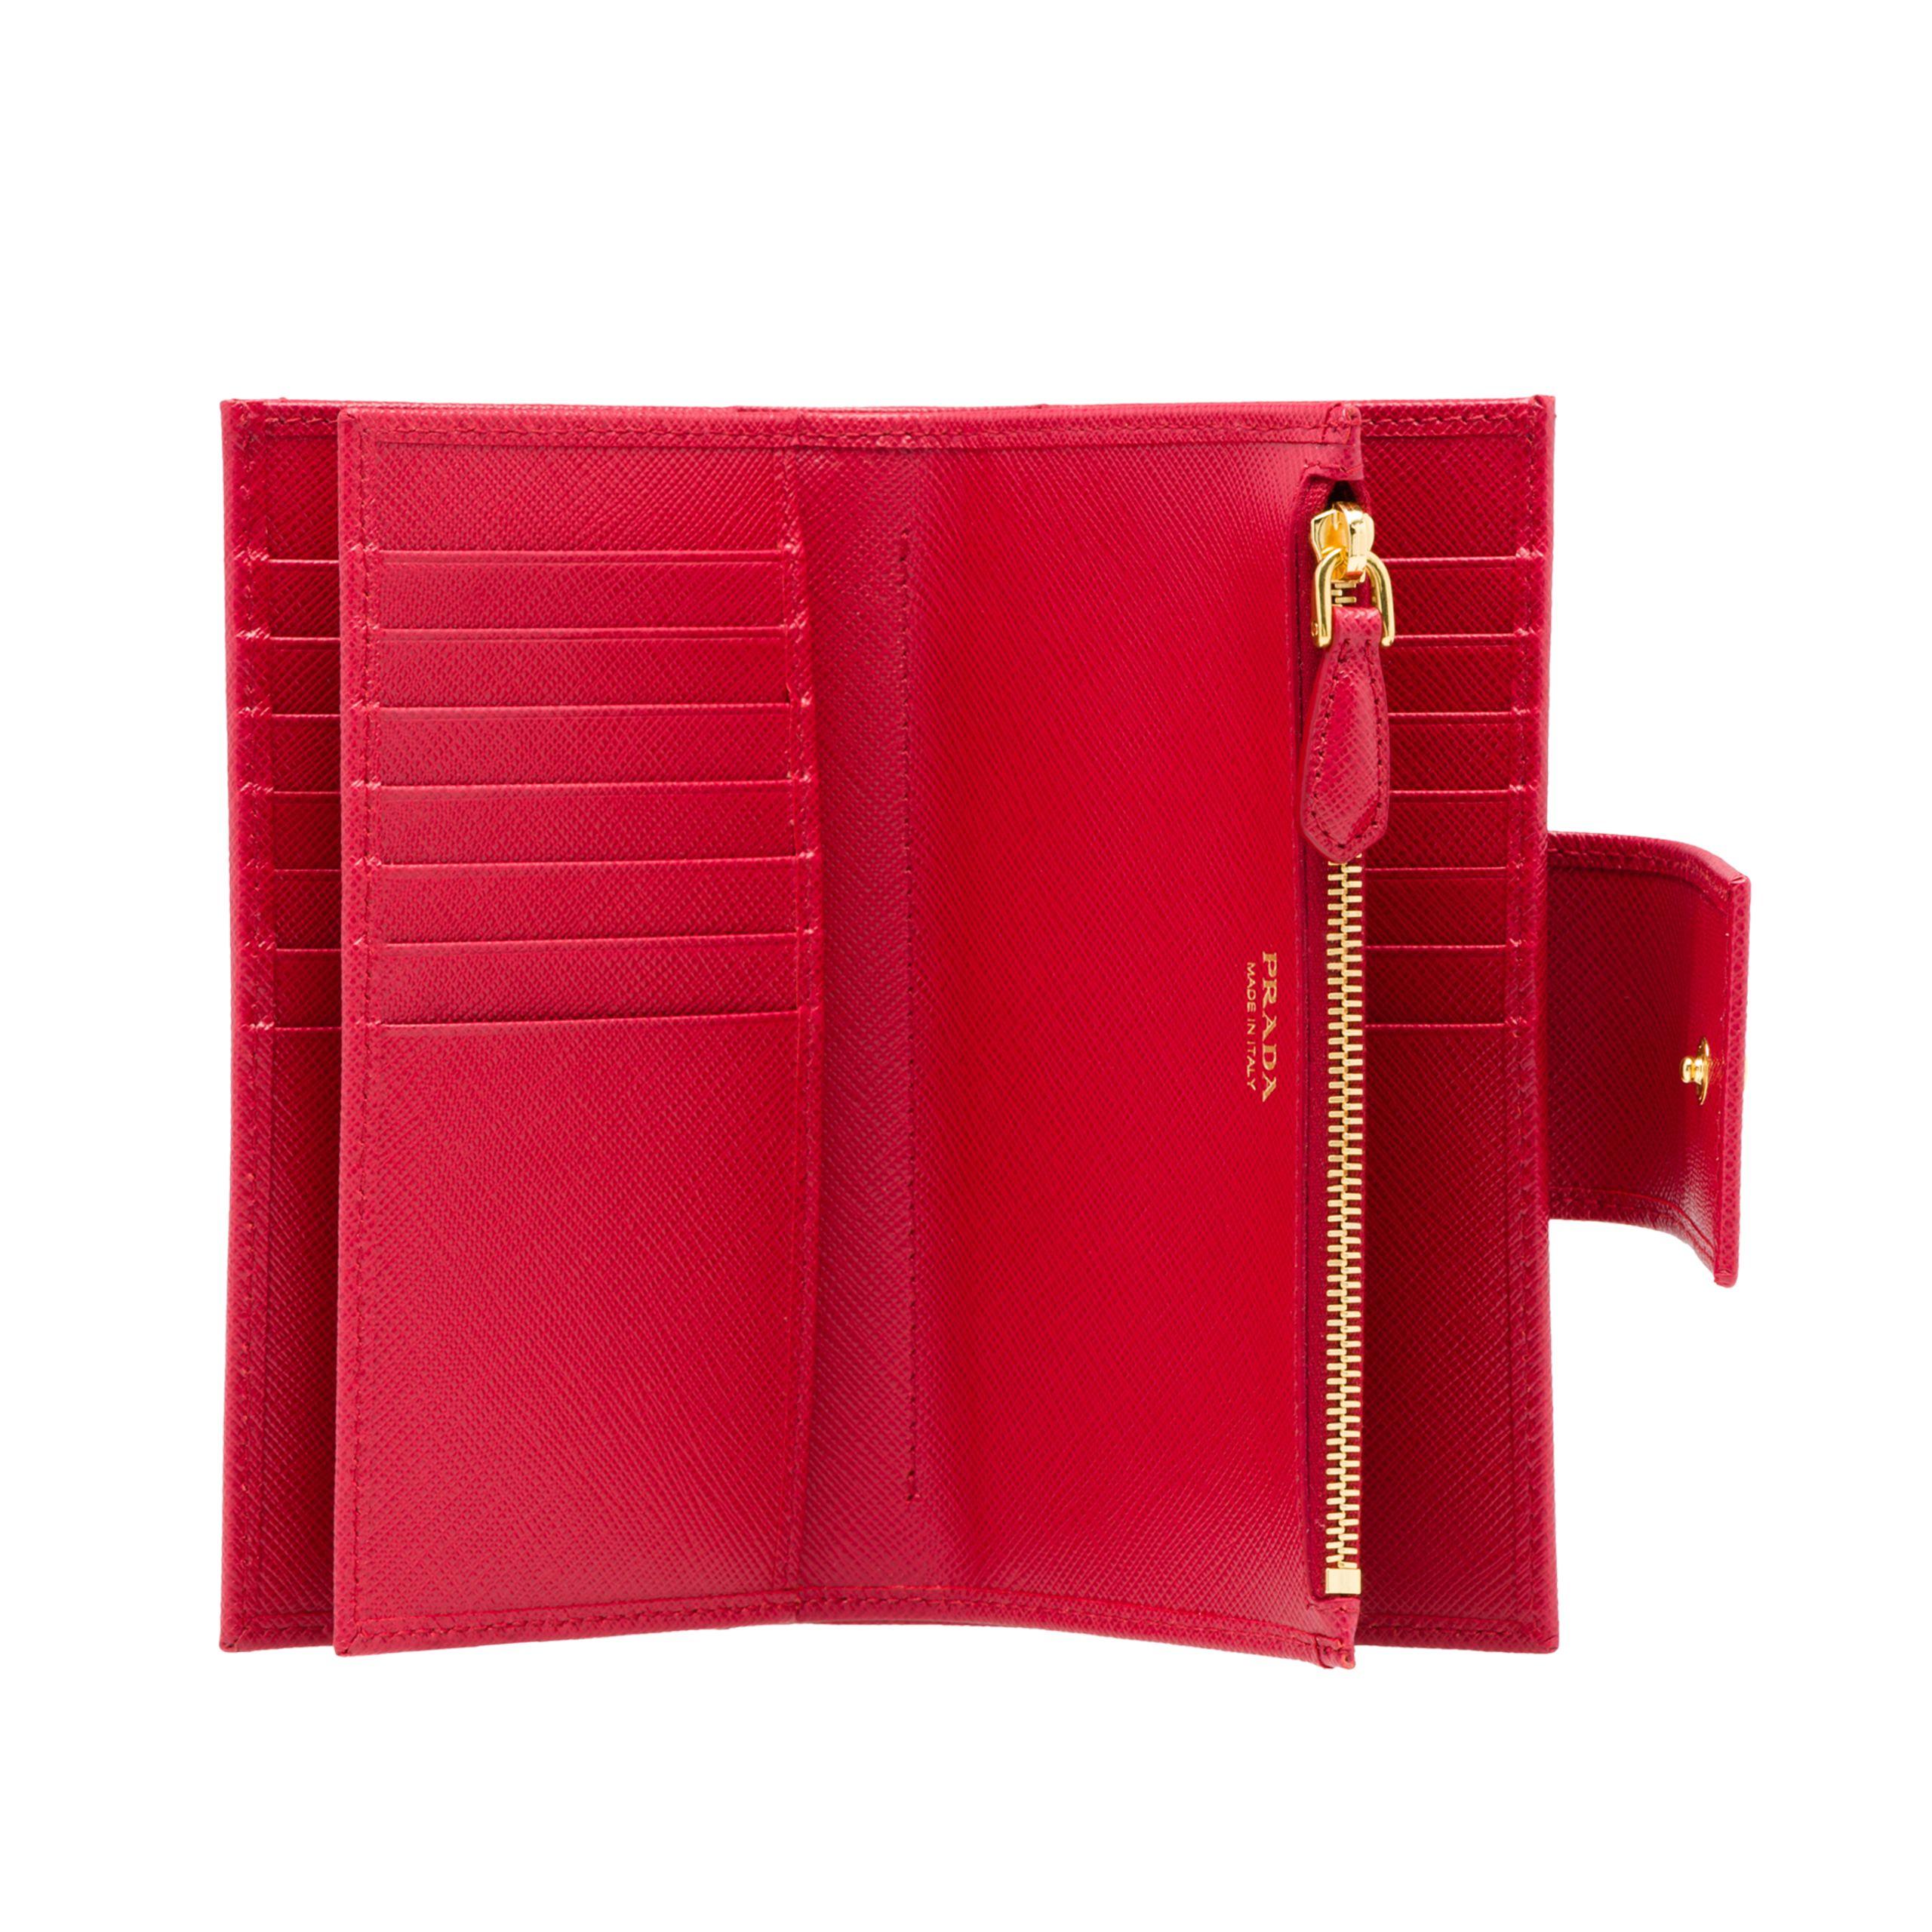 prada red saffiano wallet